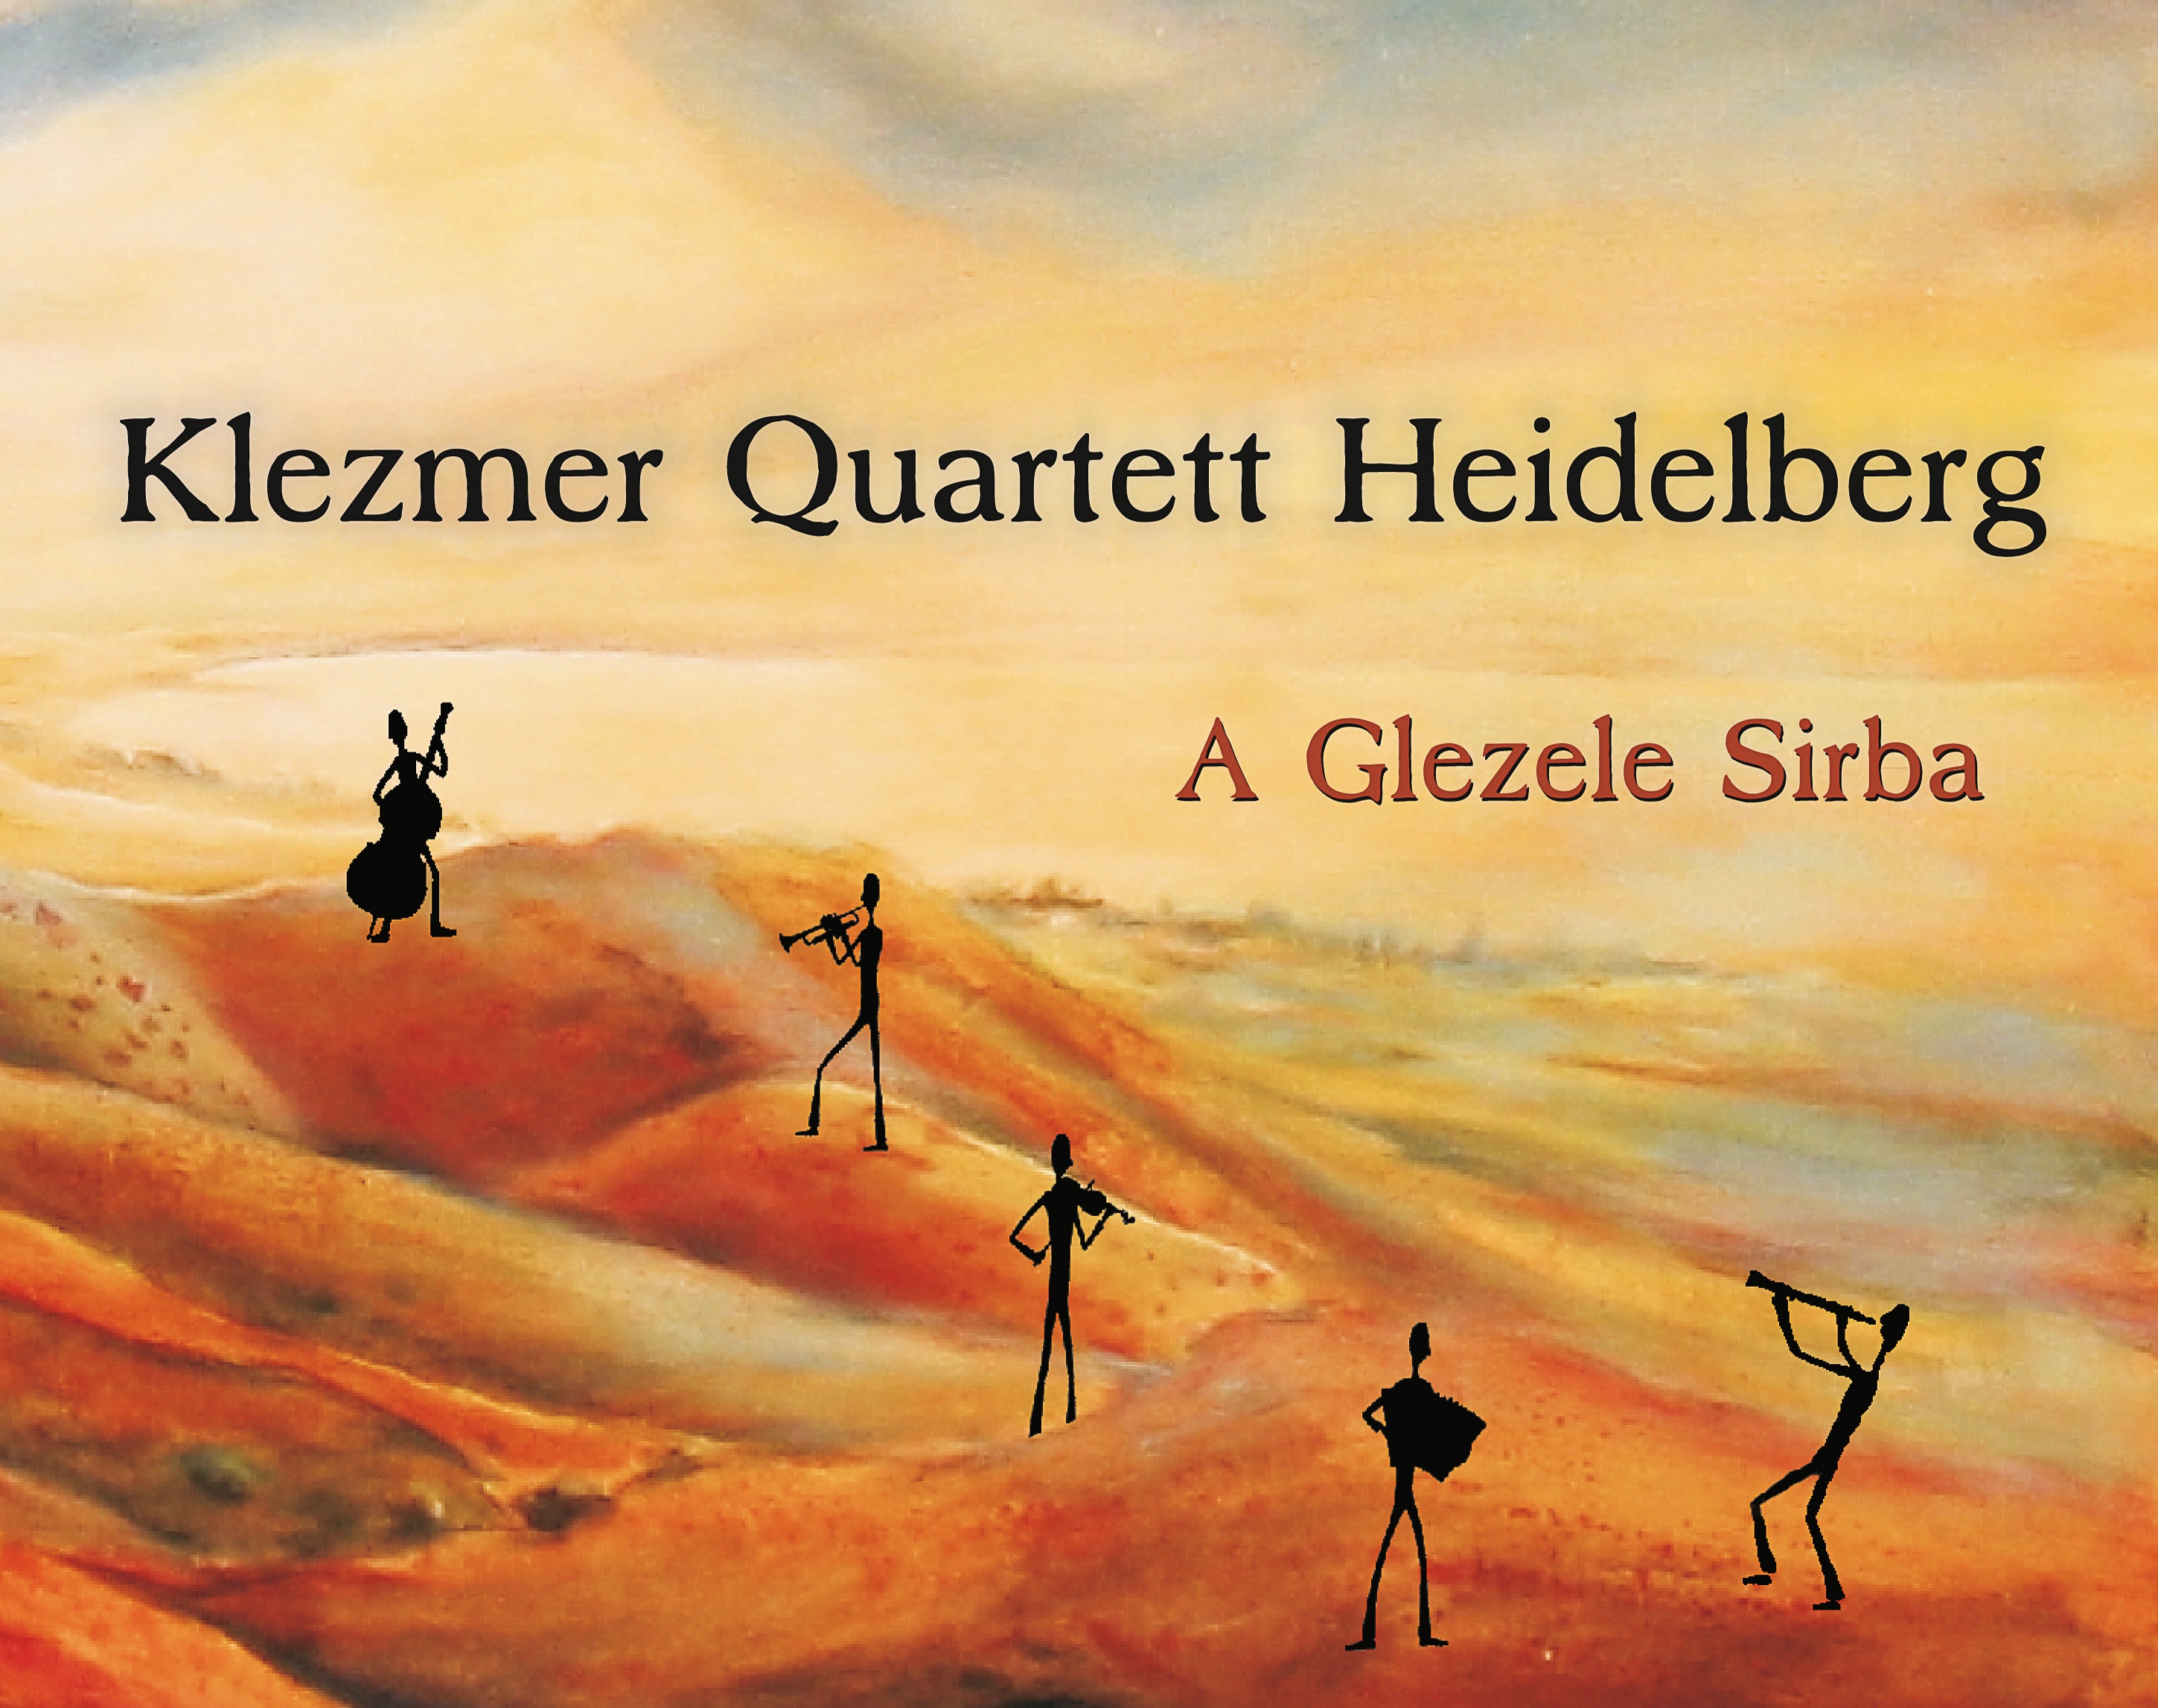 Klezmer Quartett Heidelberg am 6. Mai 2014 in der Jüdischen Kultusgemeinde Heidelberg